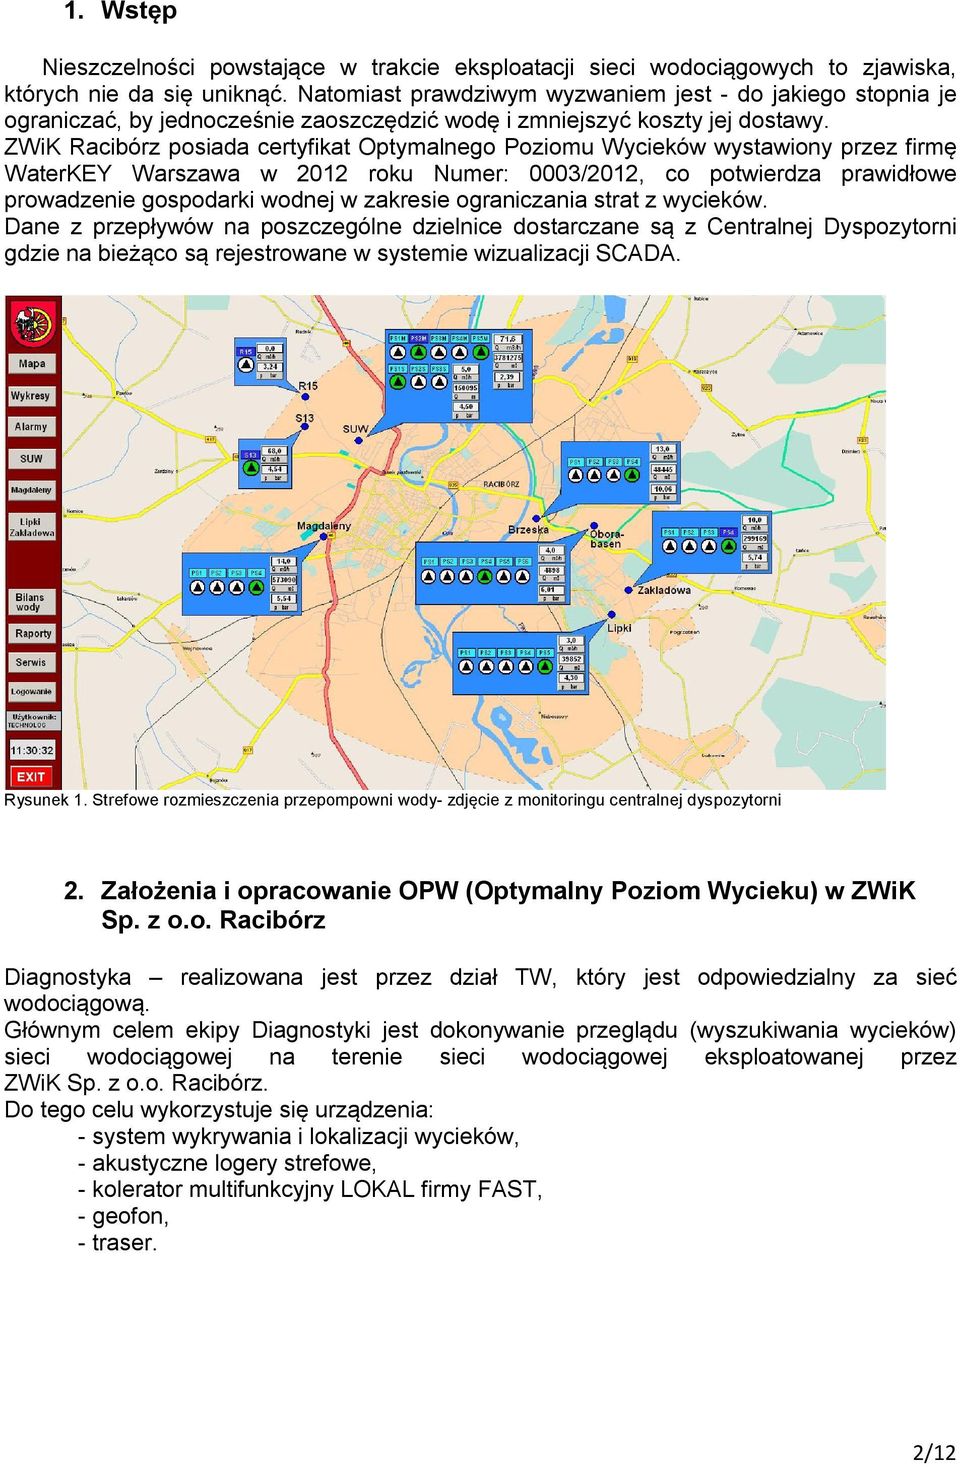 ZWiK Racibórz posiada certyfikat Optymalnego Poziomu Wycieków wystawiony przez firmę WaterKEY Warszawa w 2012 roku Numer: 0003/2012, co potwierdza prawidłowe prowadzenie gospodarki wodnej w zakresie